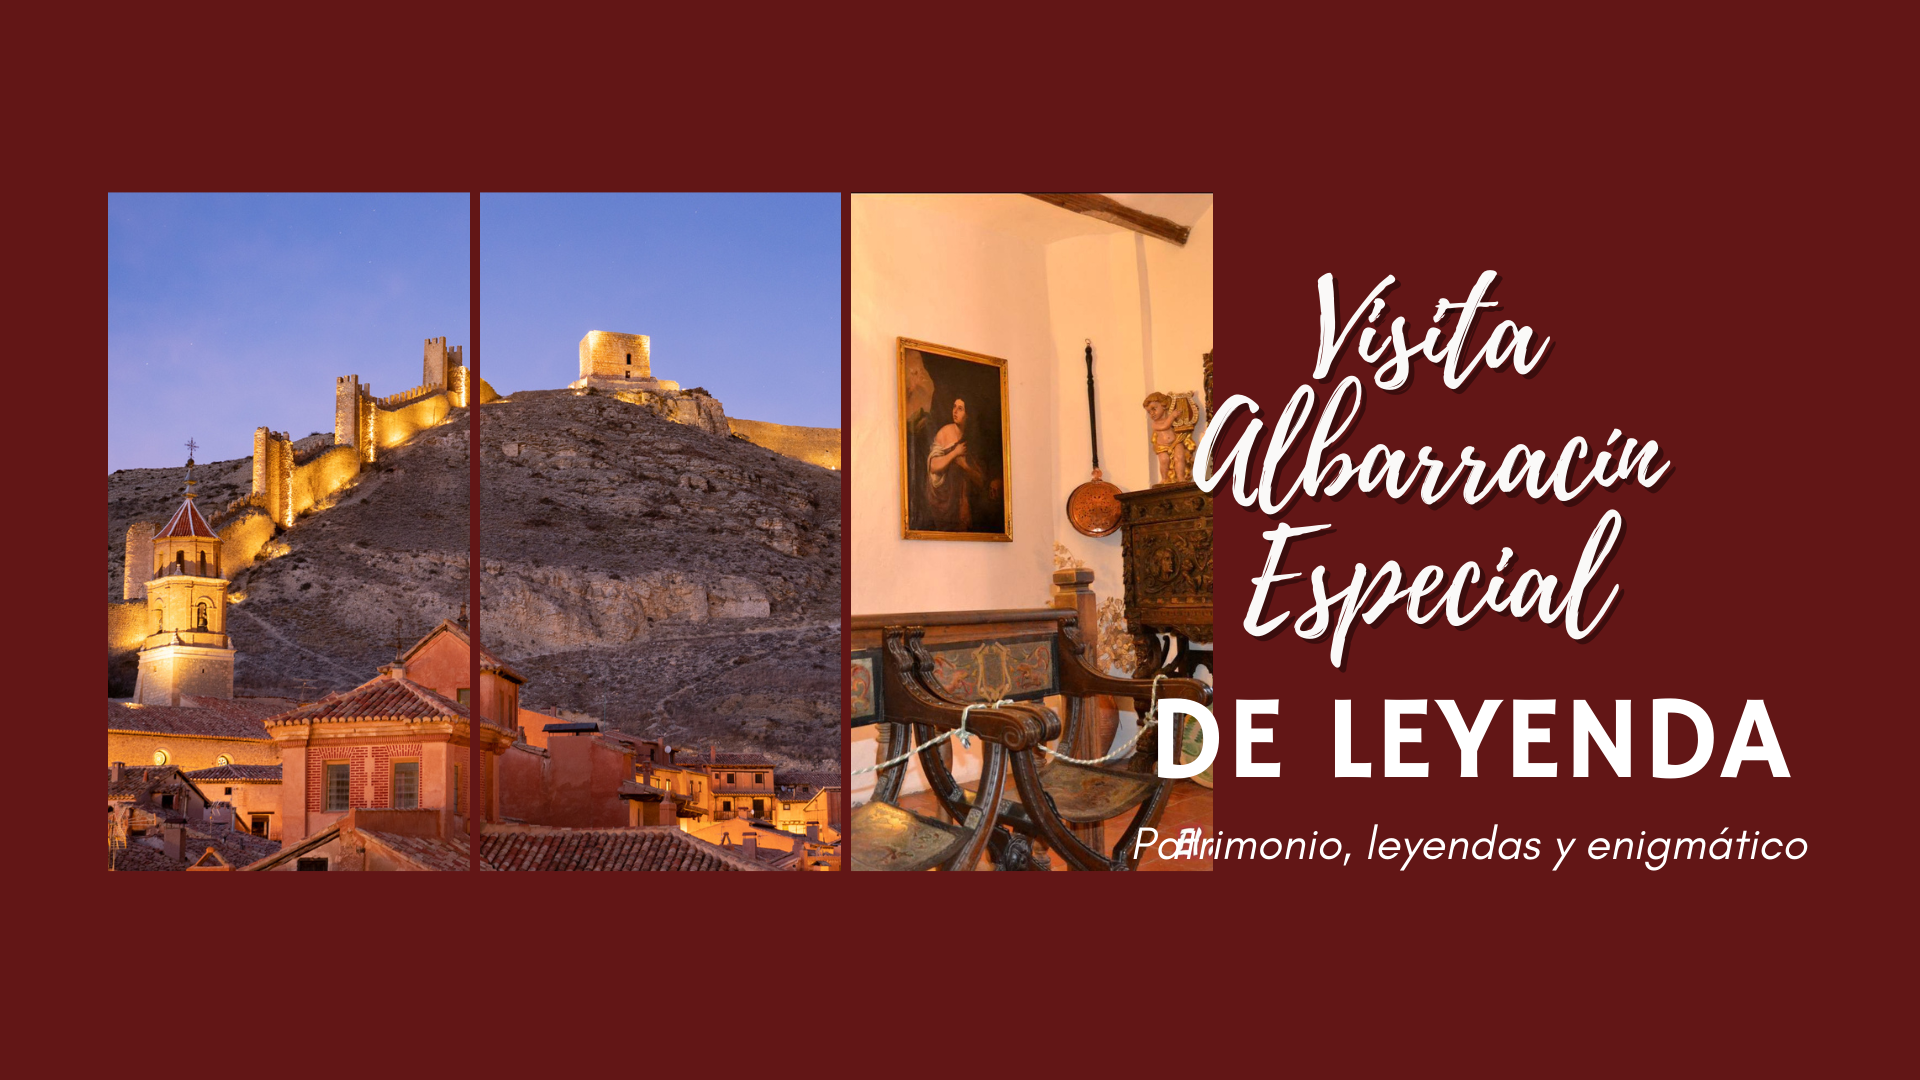 Visita guiada en Albarracín Especial Patrimonio y Leyendas! 22 y 23 de Abril!